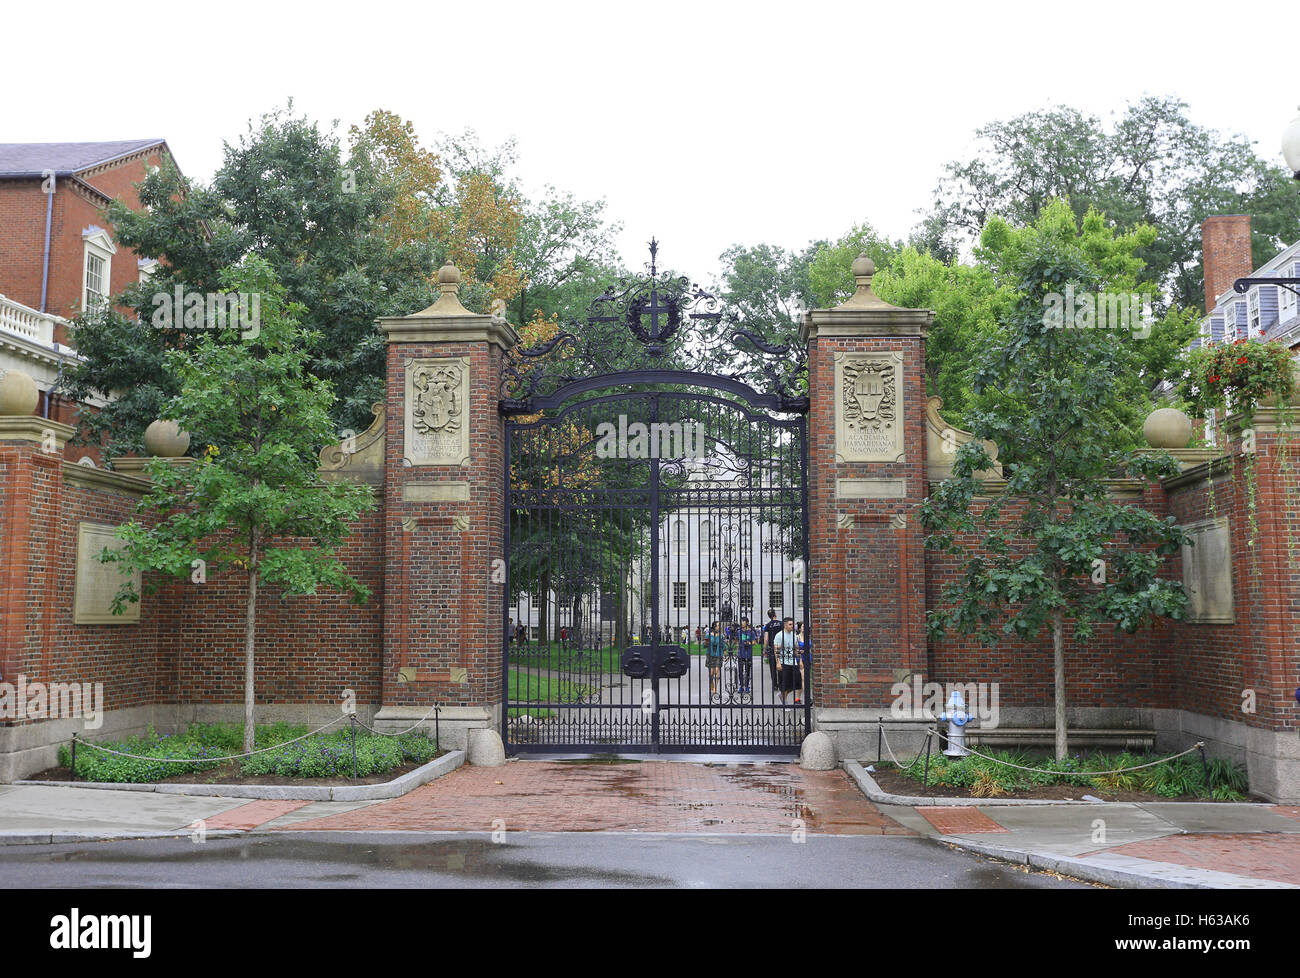 BOSTON, Stati Uniti d'America - 10 sett: la famosa la Harvard University di Cambridge, MA, Stati Uniti d'America il 10 settembre 2016. Per quanto riguarda la classifica di specifici Foto Stock